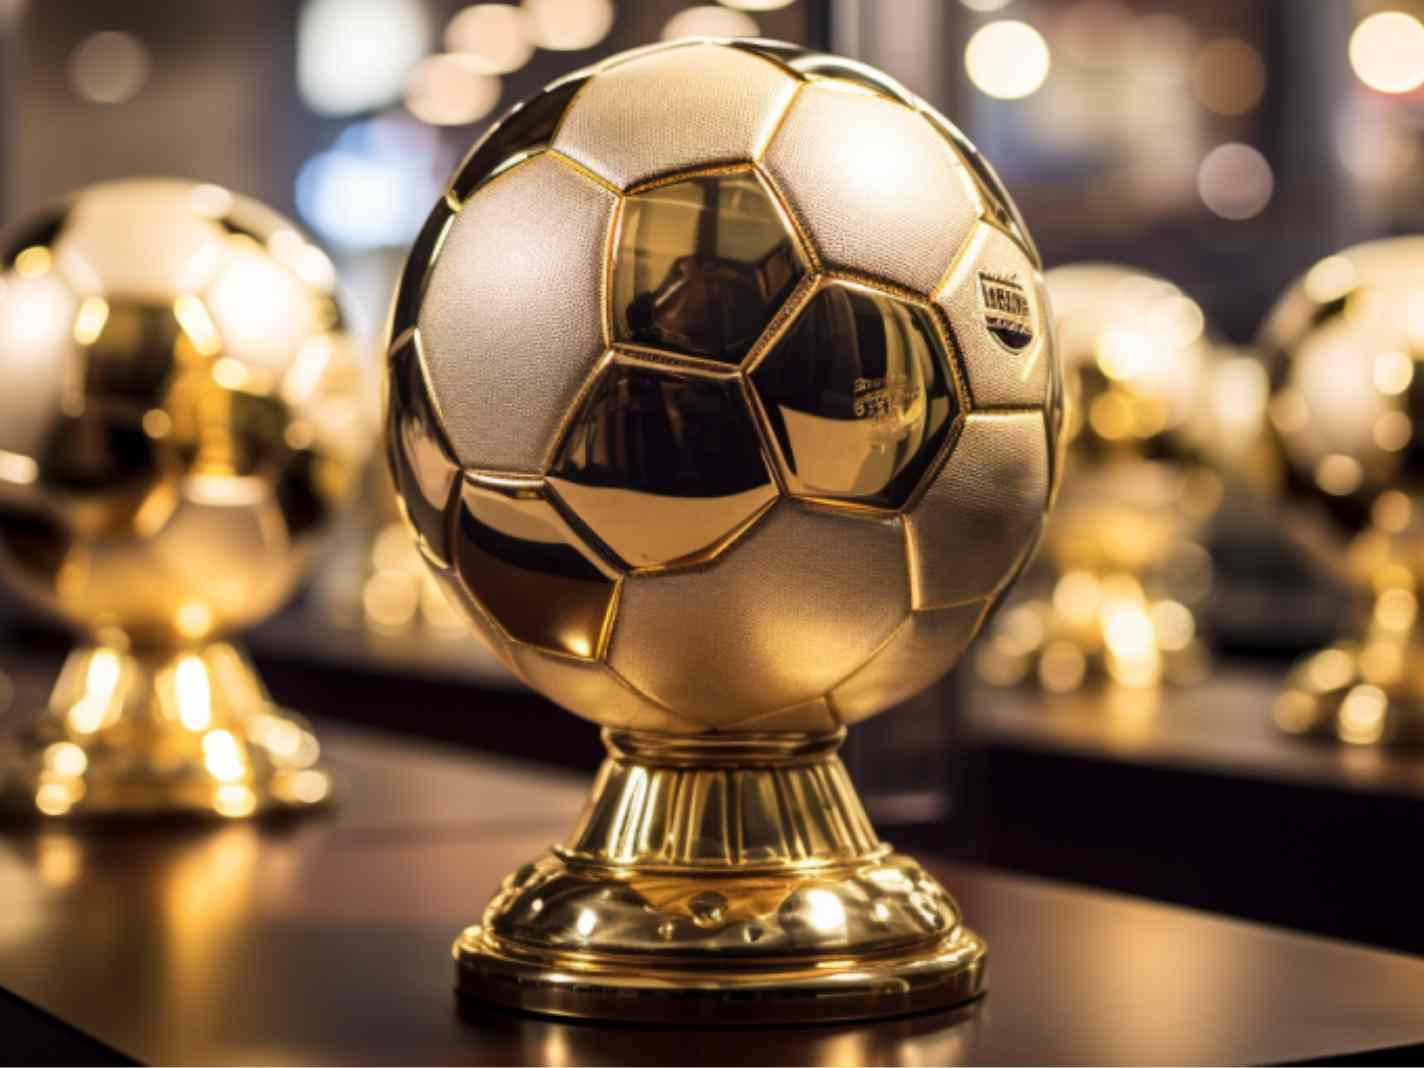 Eusebio, Kaka, Neuer & More: The Tensest Ballon d’Or Contests of All Time